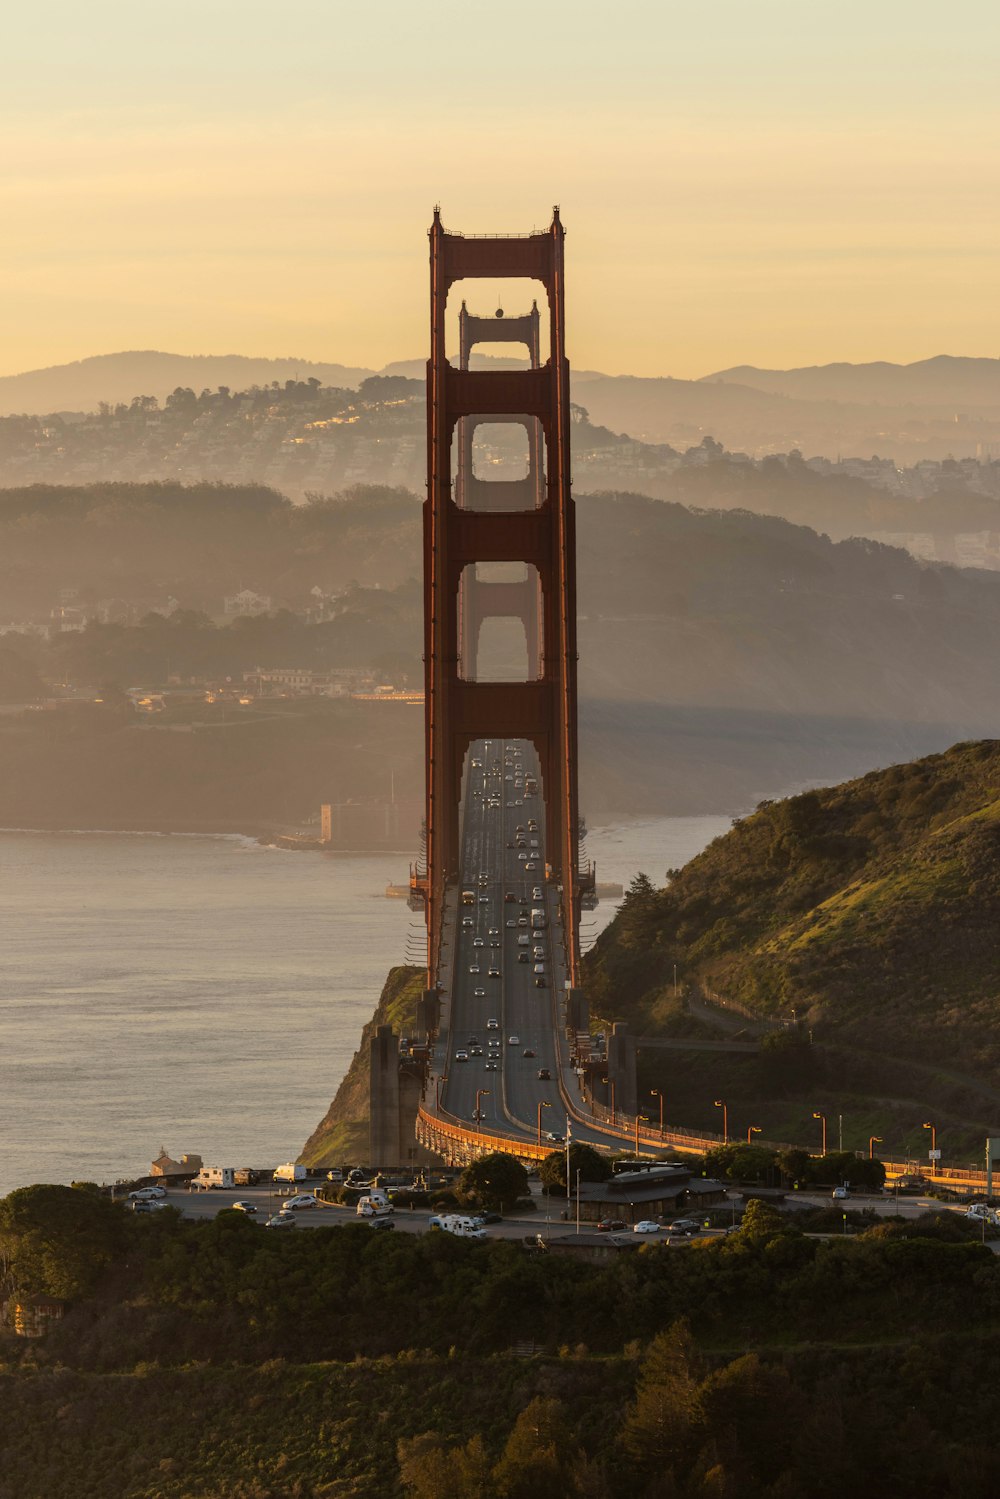 Une vue du Golden Gate Bridge à San Francisco